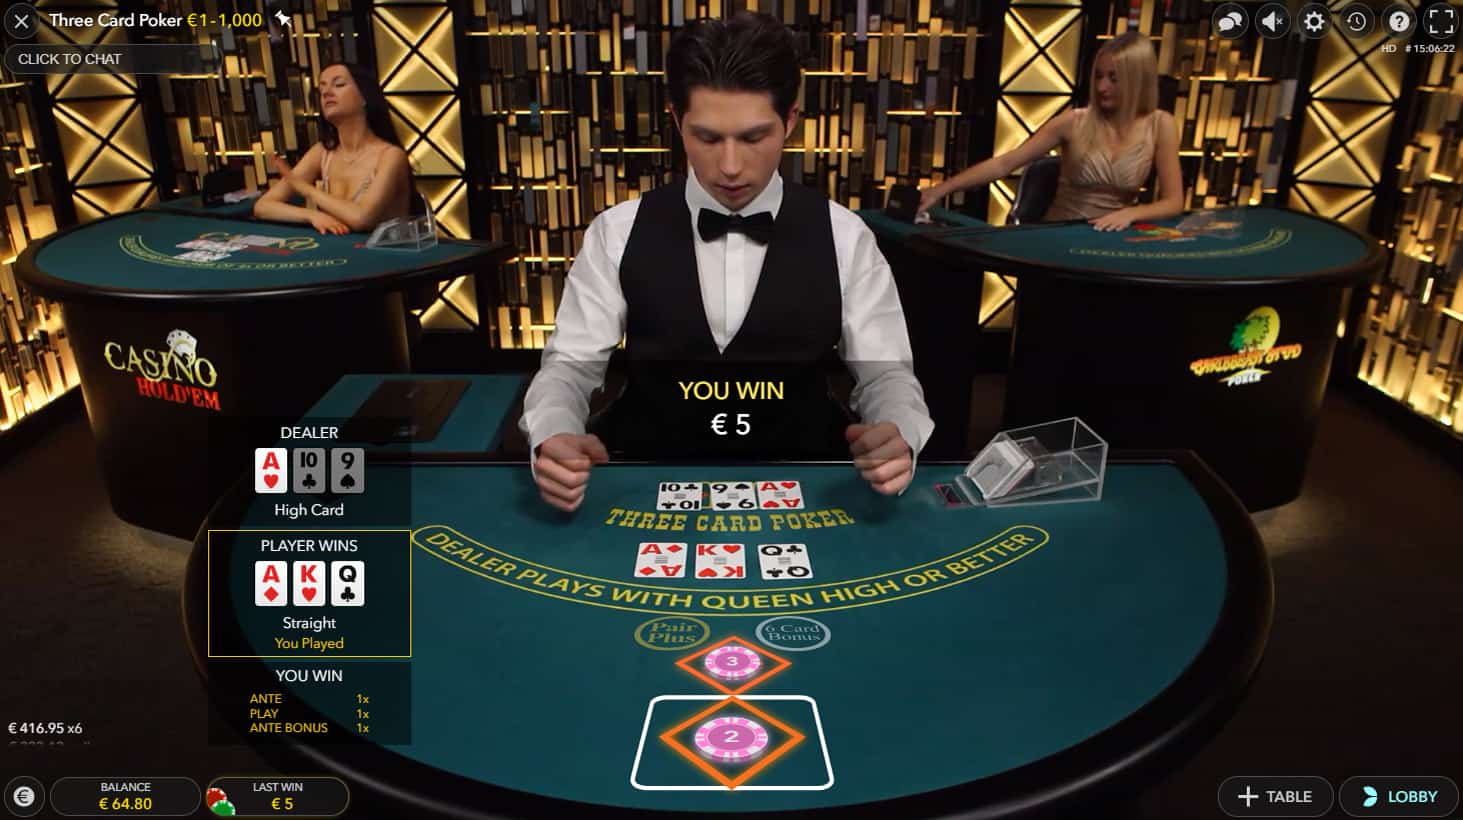 Bo tui 2 bi quyet choi Poker giup ban thang doi thu mot cach de dang